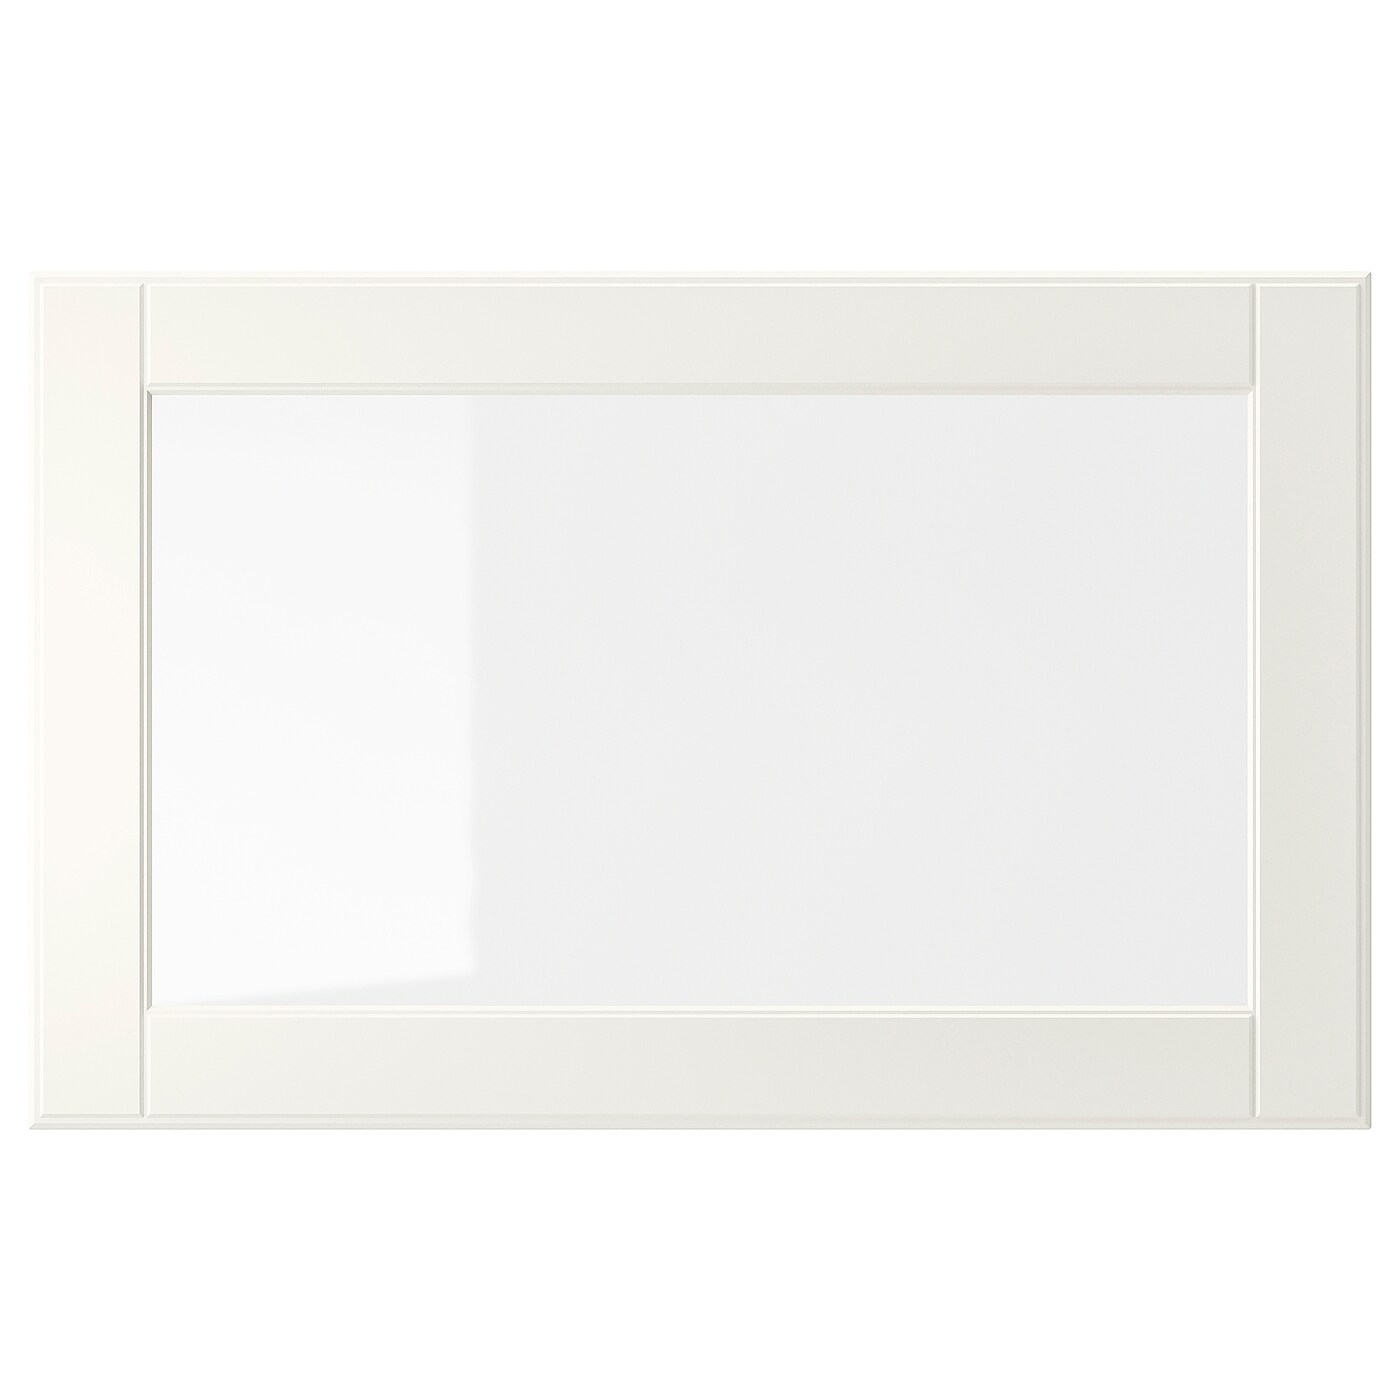 Дверца - OSTVIK IKEA/ ОСТВИК ИКЕА,  60x38 см, белый